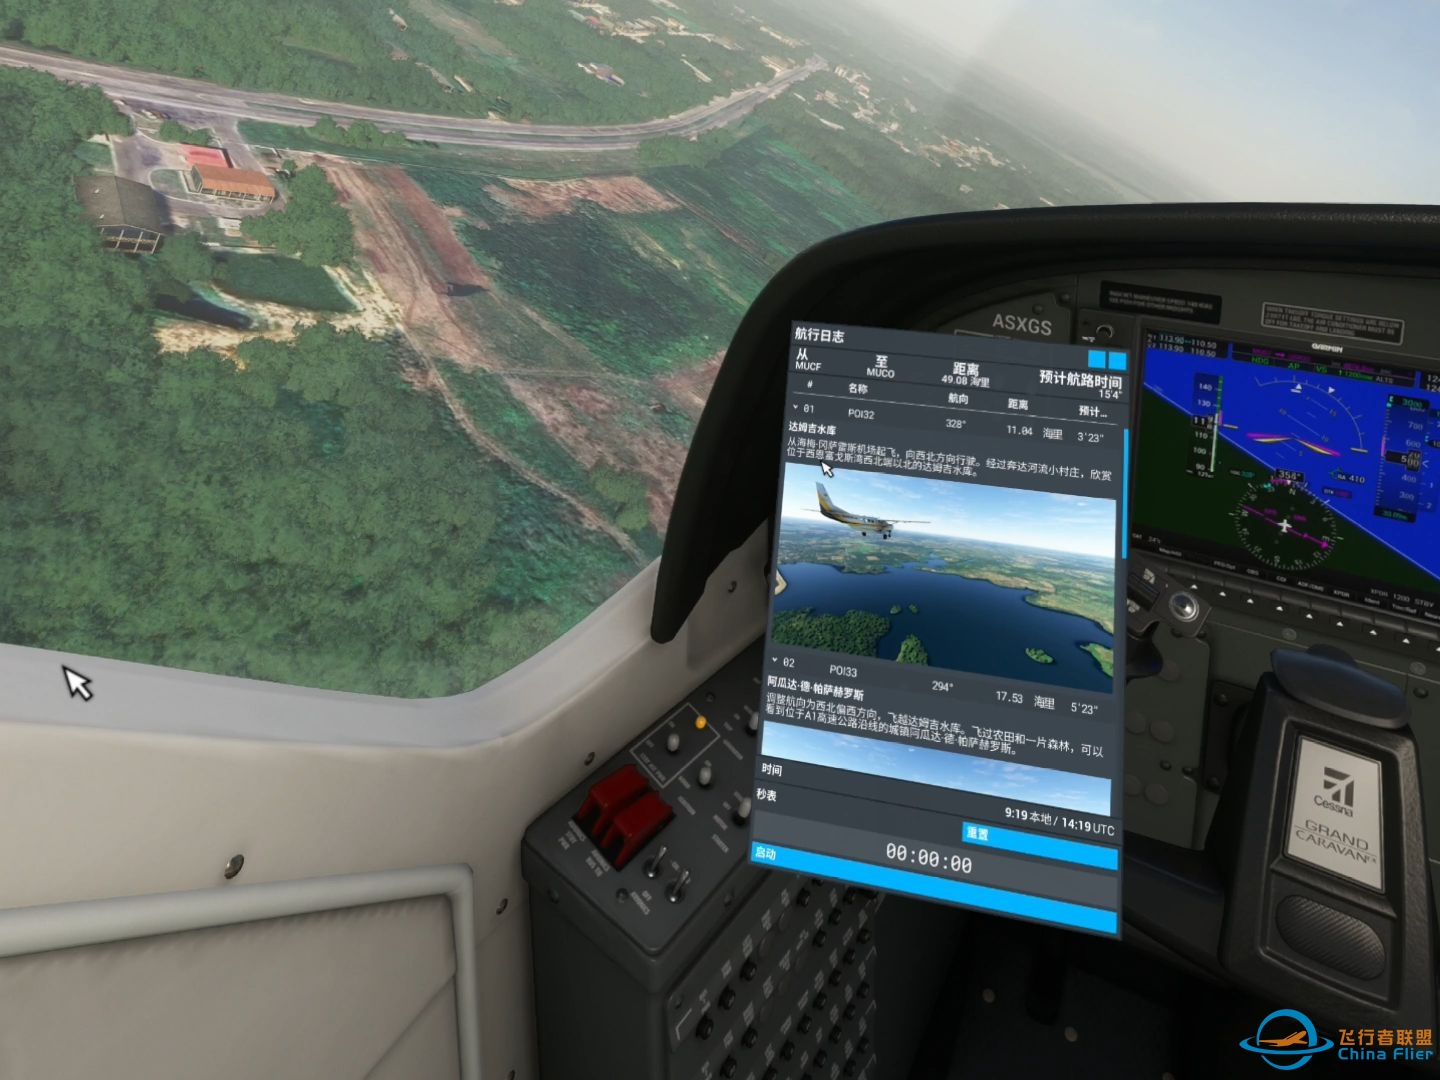 微软模拟飞行 584 VR 古巴圣地亚哥至哈瓦那 郊野之行-5372 